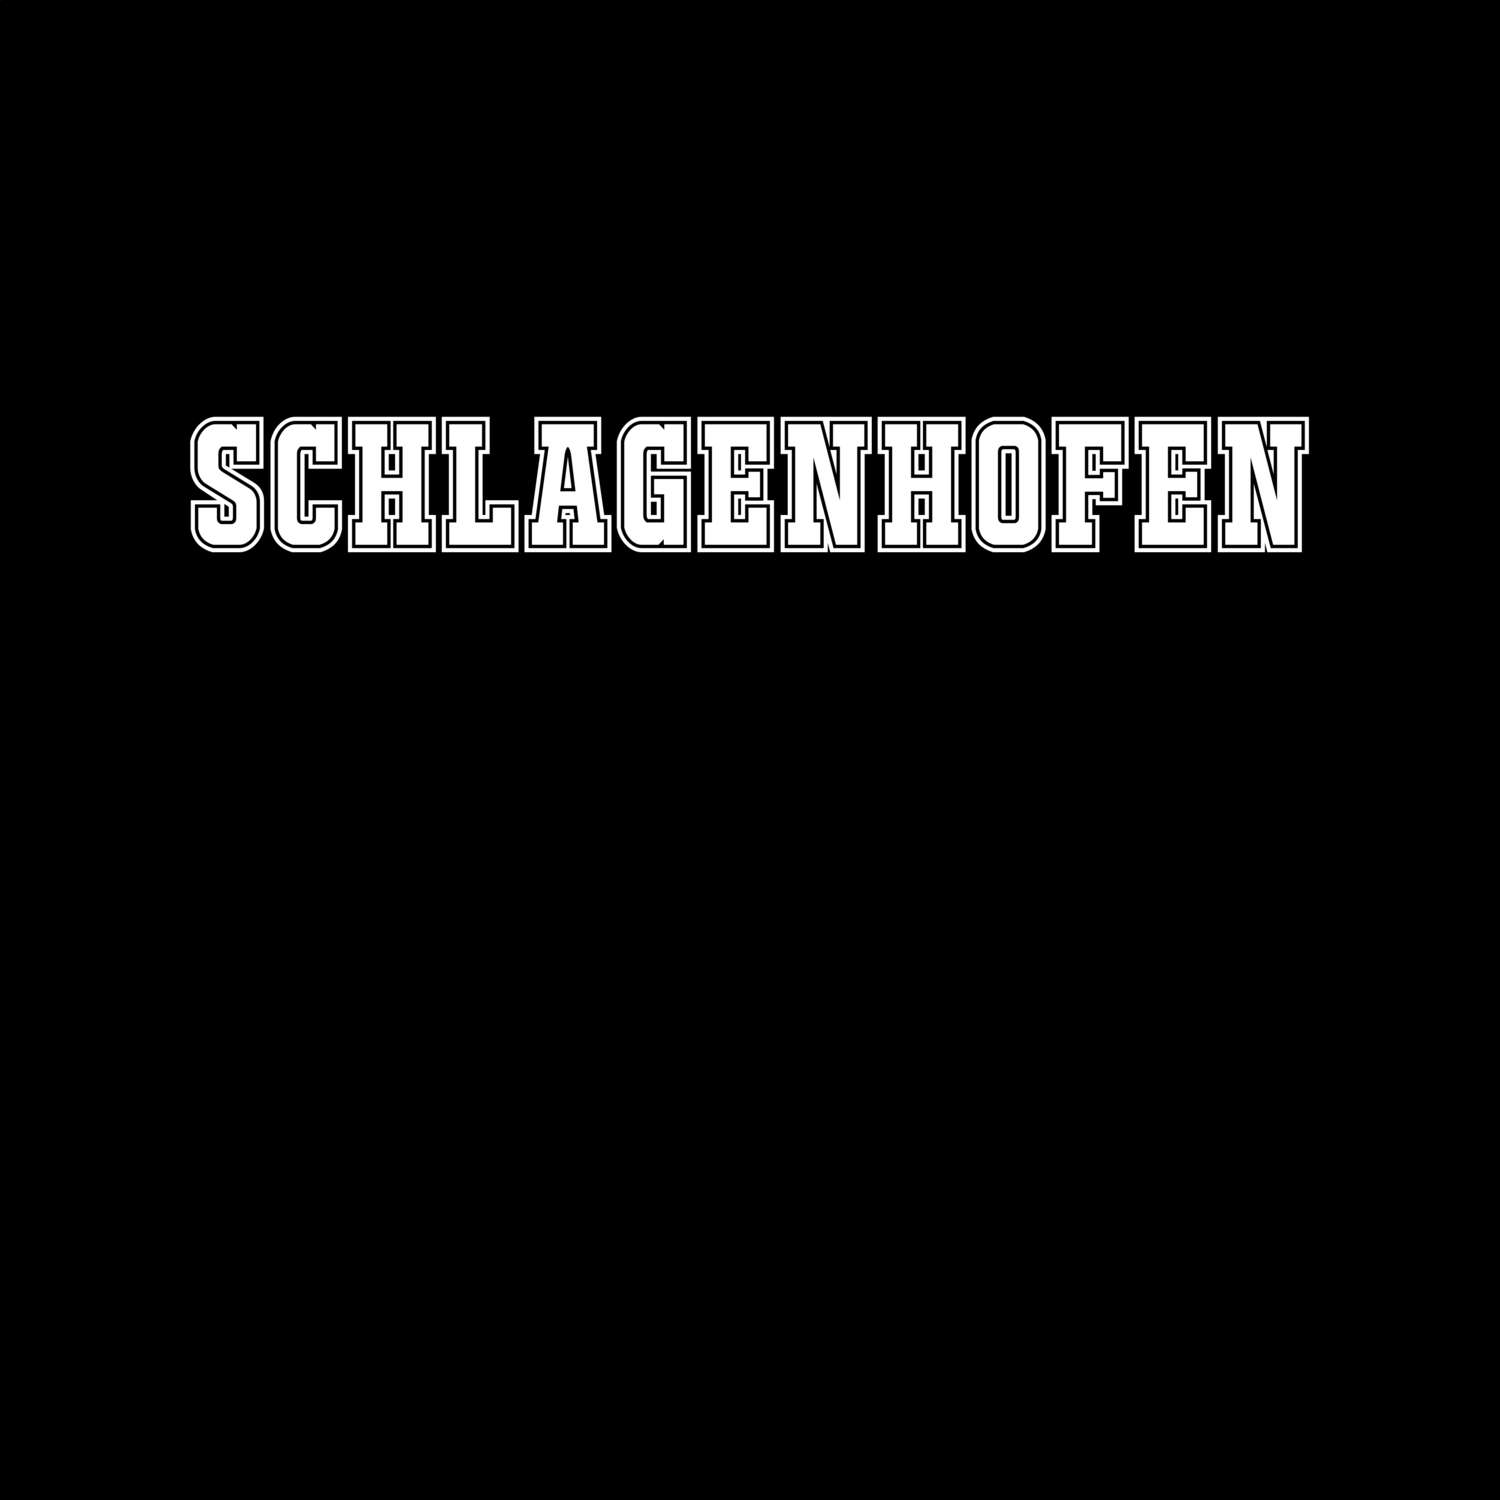 Schlagenhofen T-Shirt »Classic«